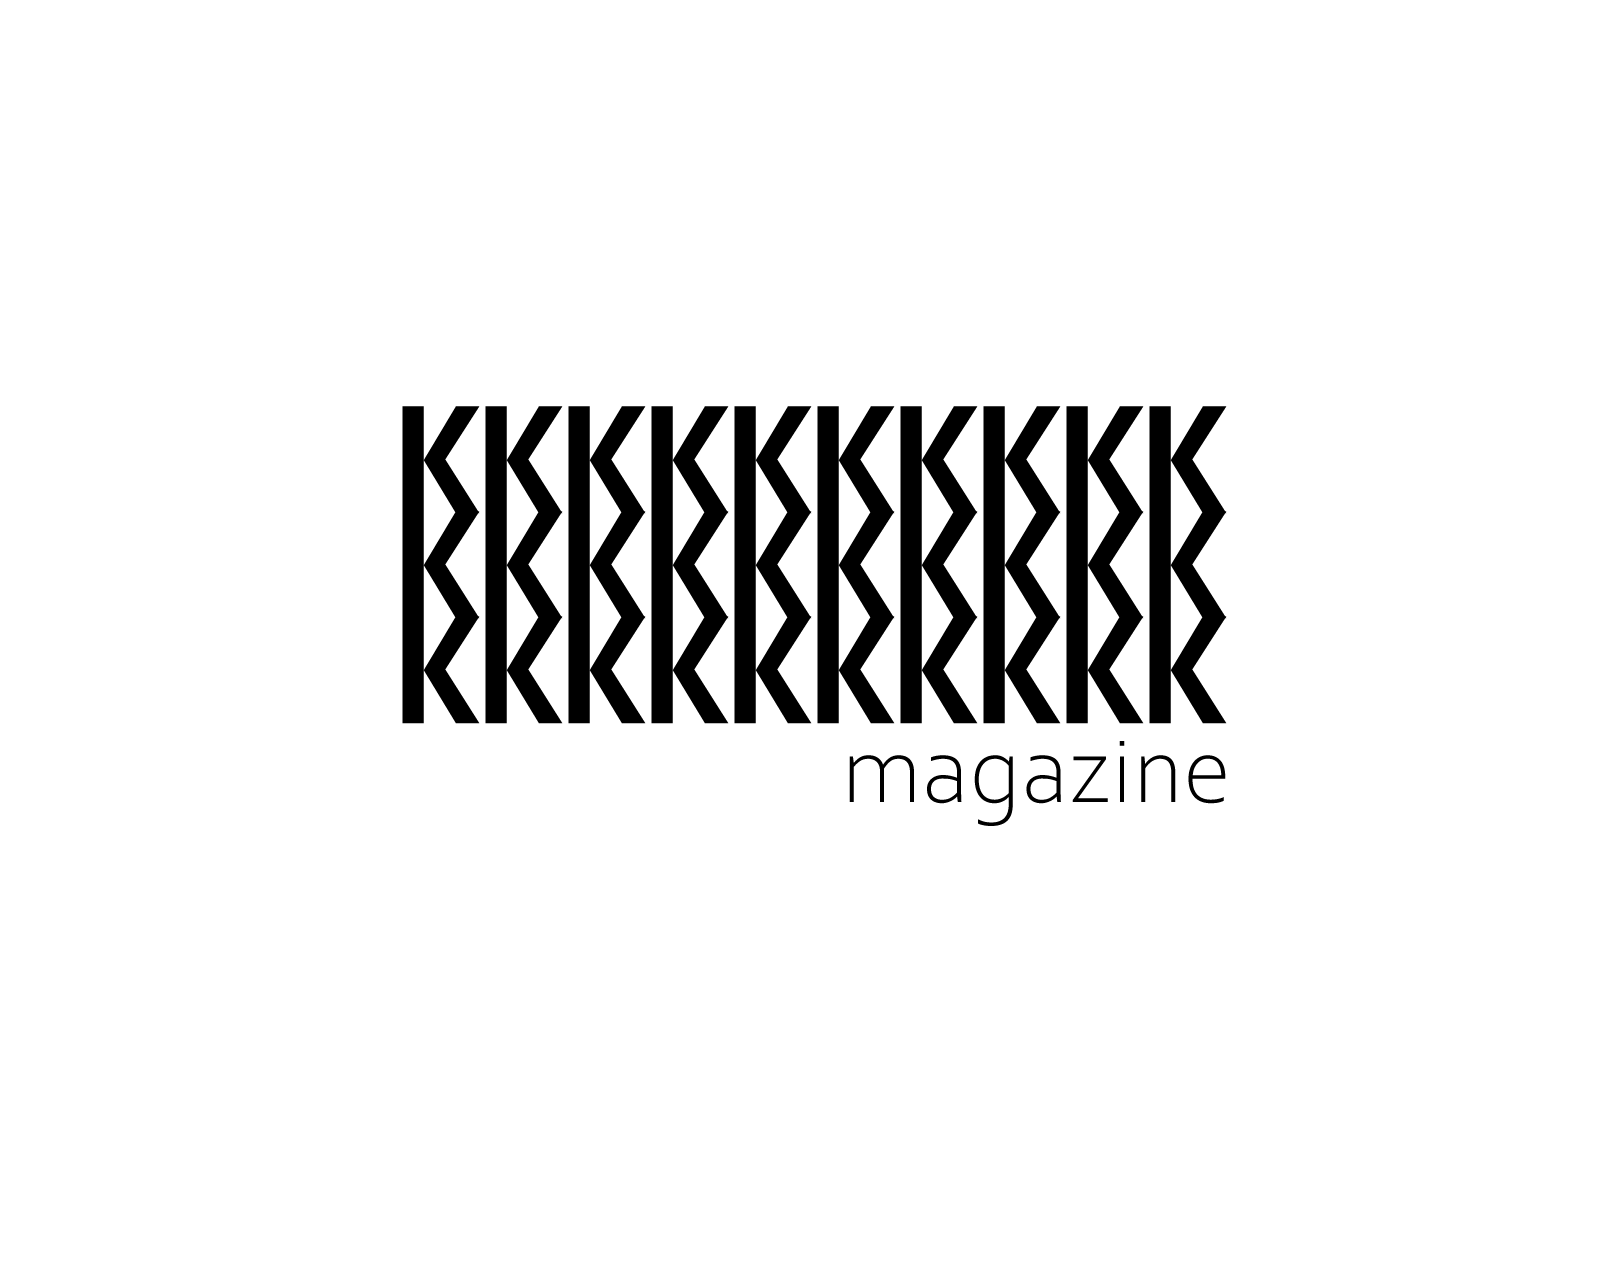 30K magazine